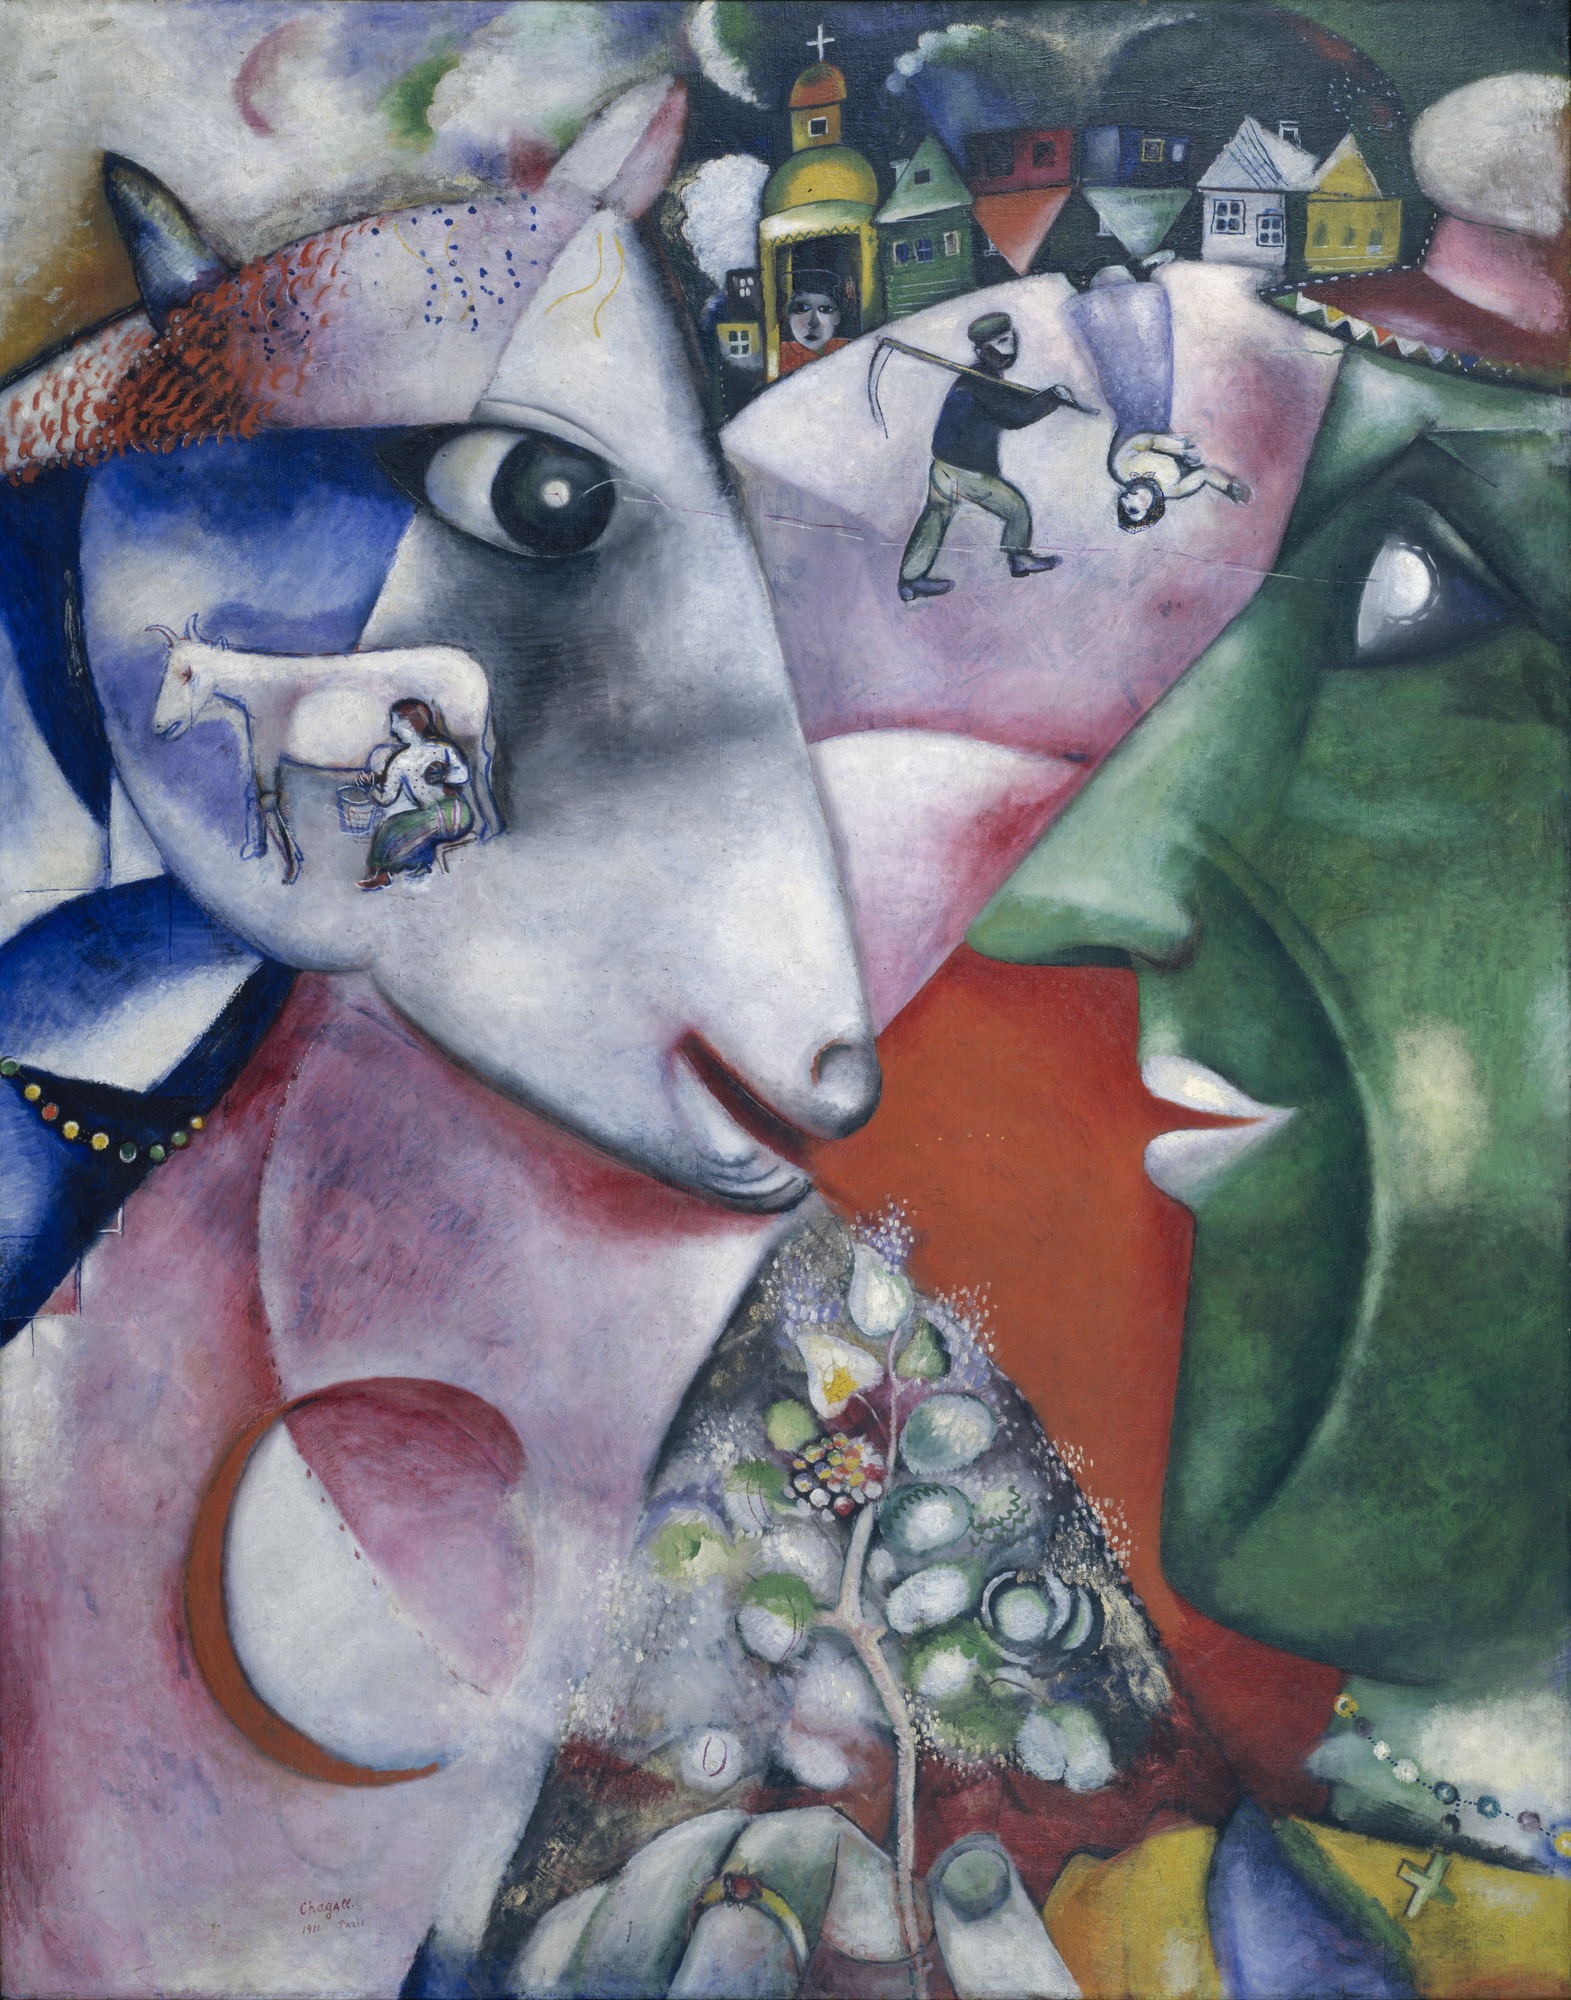 Ich und das Dorf by Marc Chagall - 1911 - 191 x 150,5 cm Museum of Modern Art